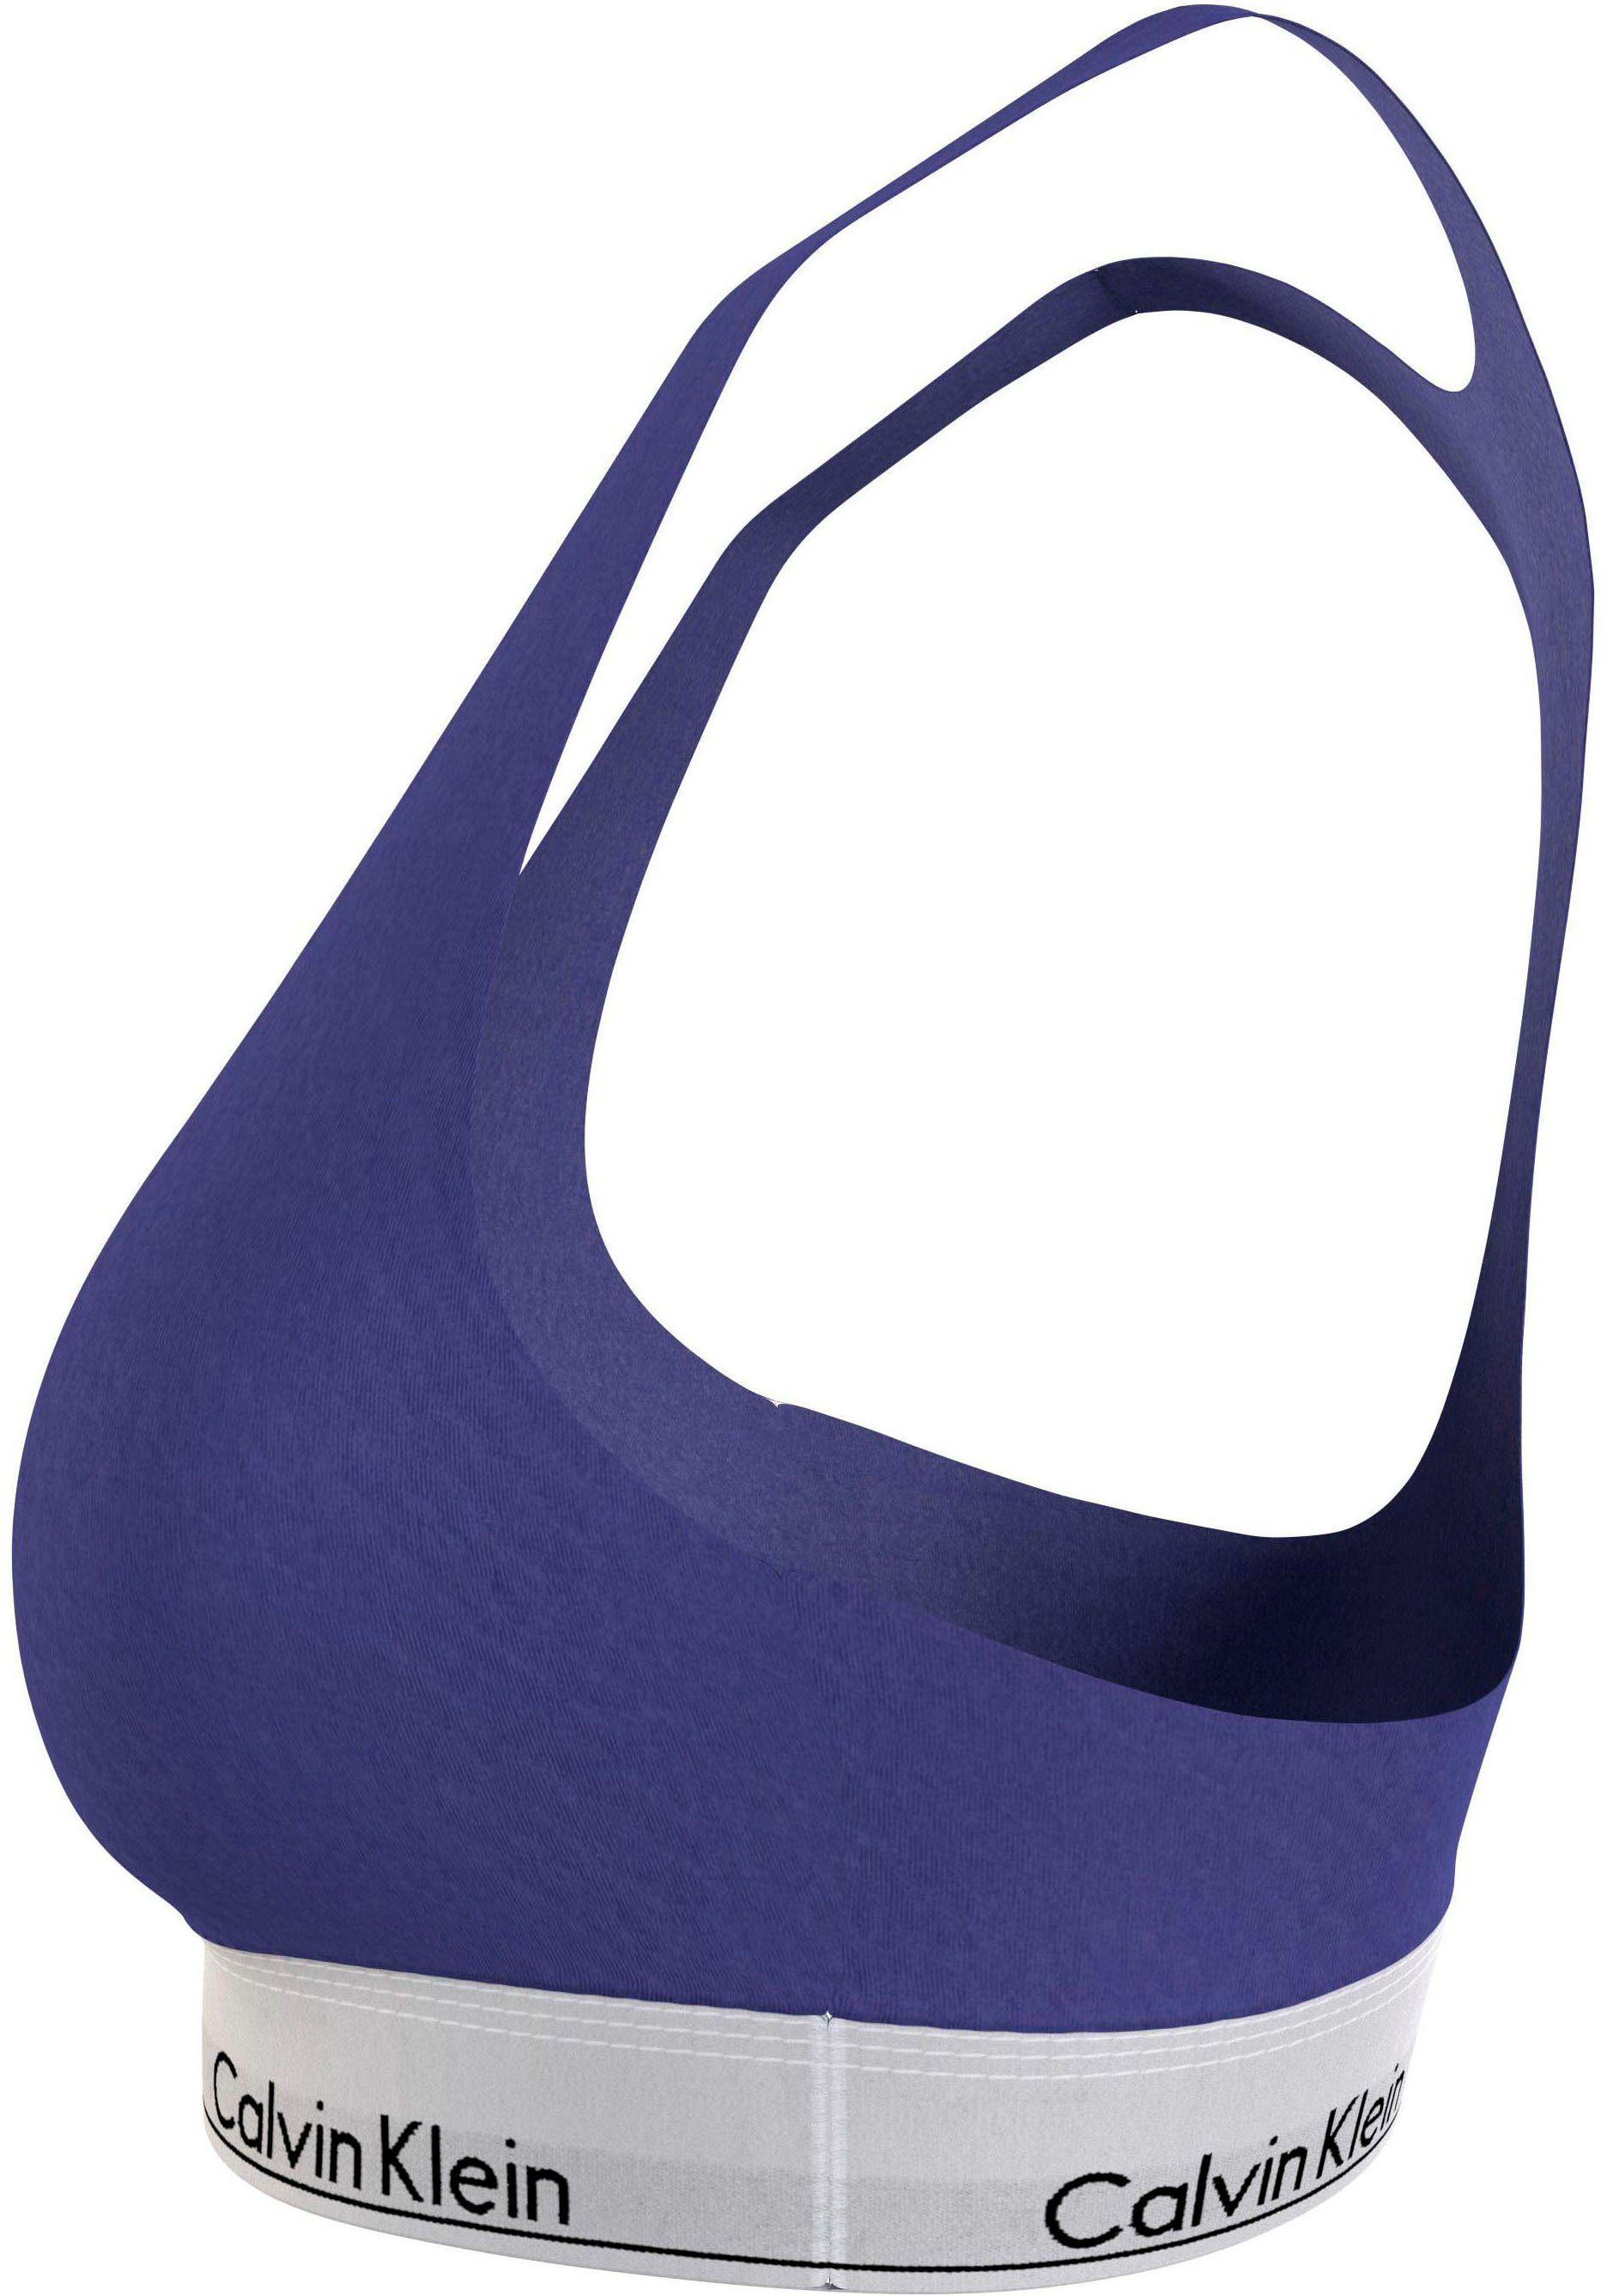 Bralette-BH in Größen Underwear Calvin Klein UNLINED (FF) blau BRALETTE Size Plus